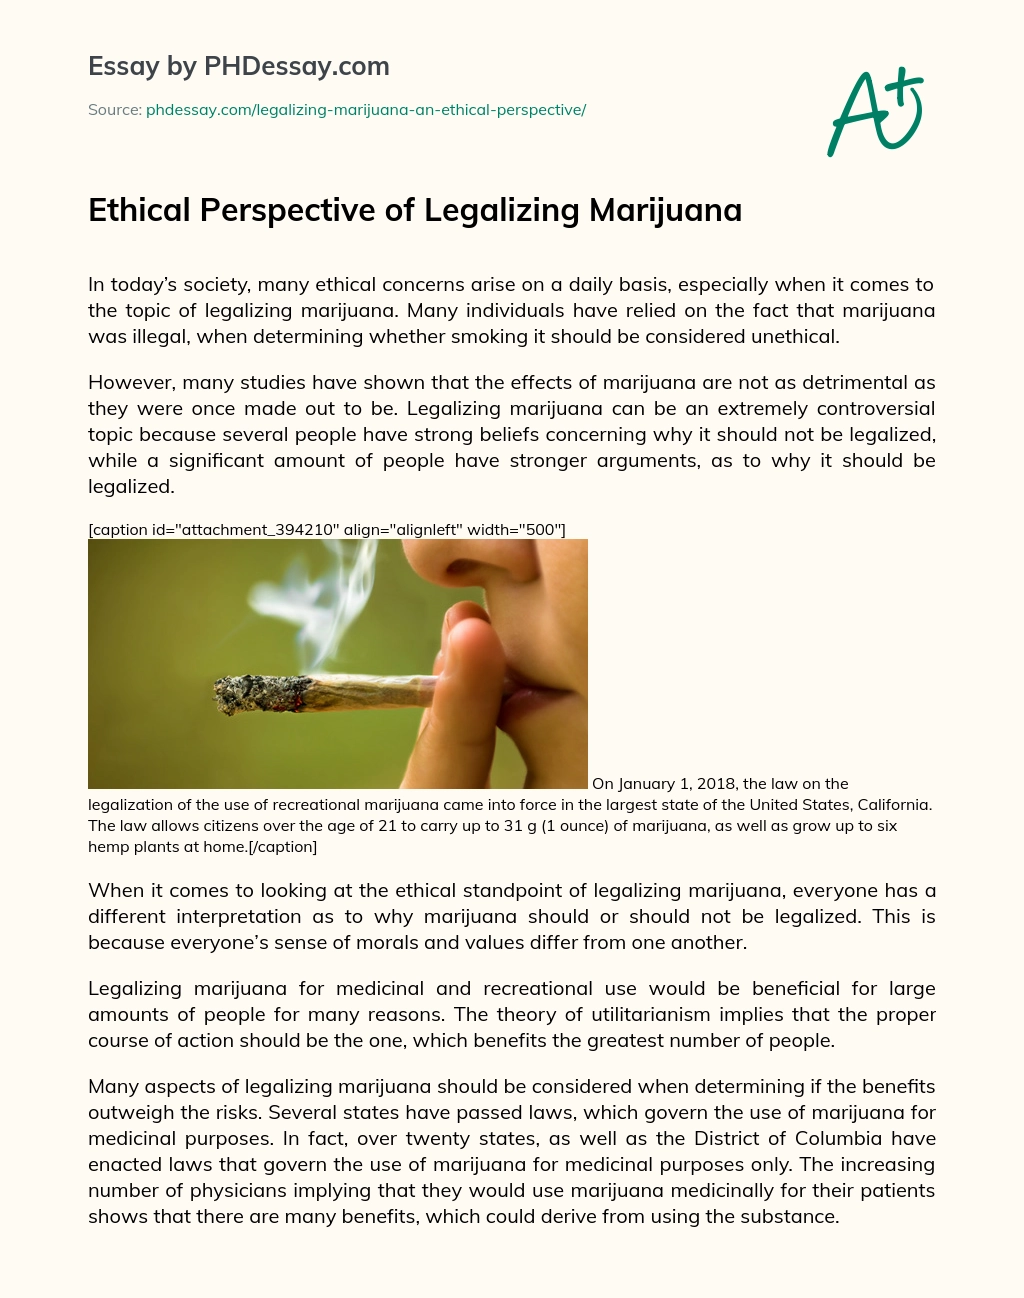 Ethical Perspective of Legalizing Marijuana essay